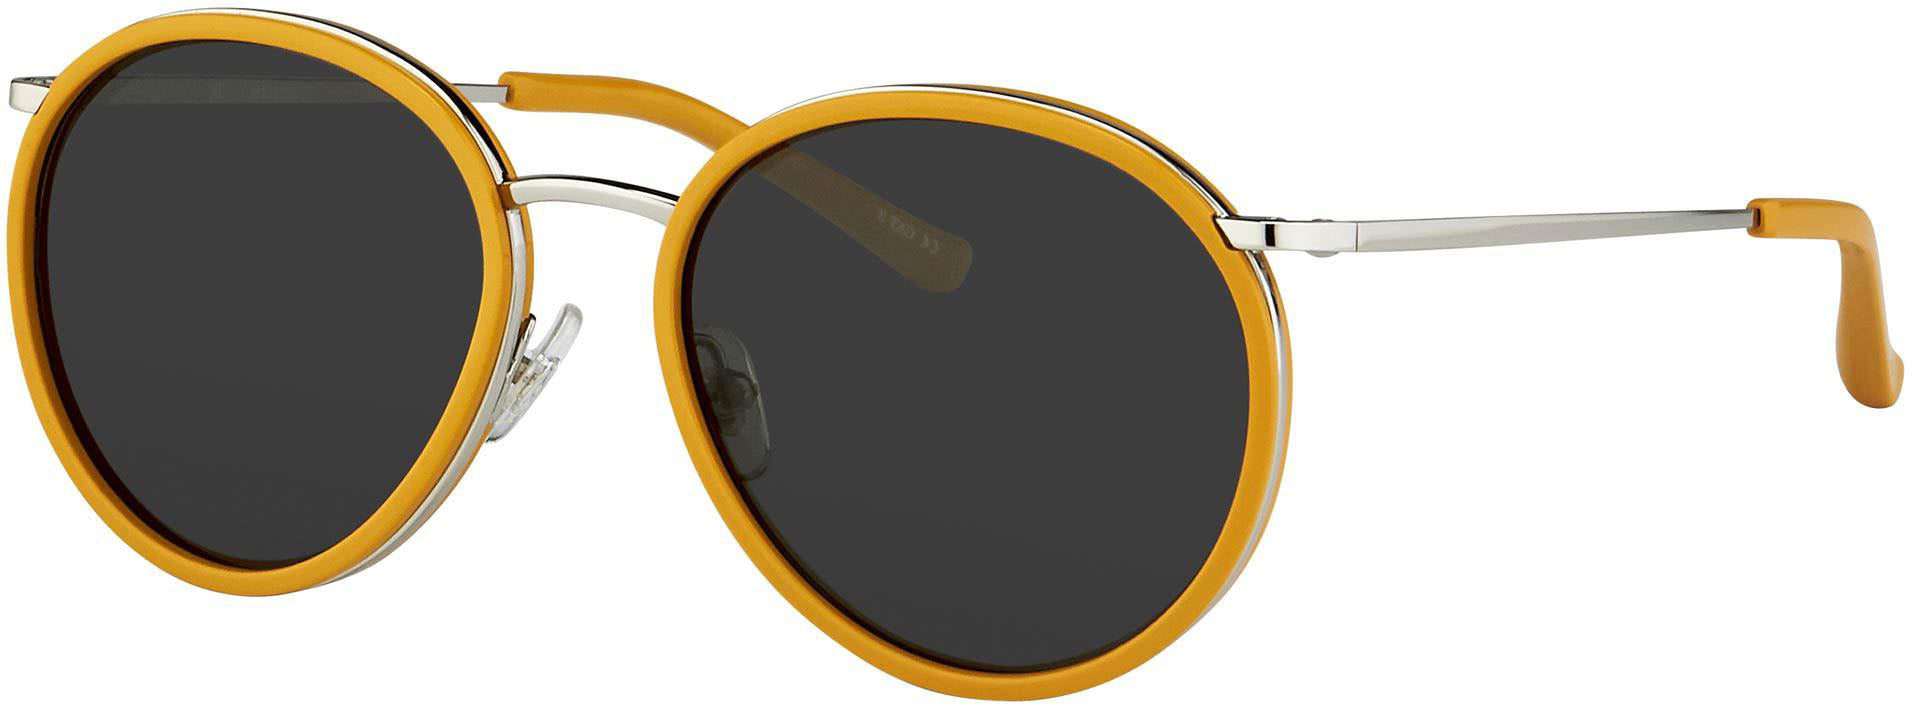 Color_DVN95C2SUN - Dries van Noten 95 C2 Oval Sunglasses